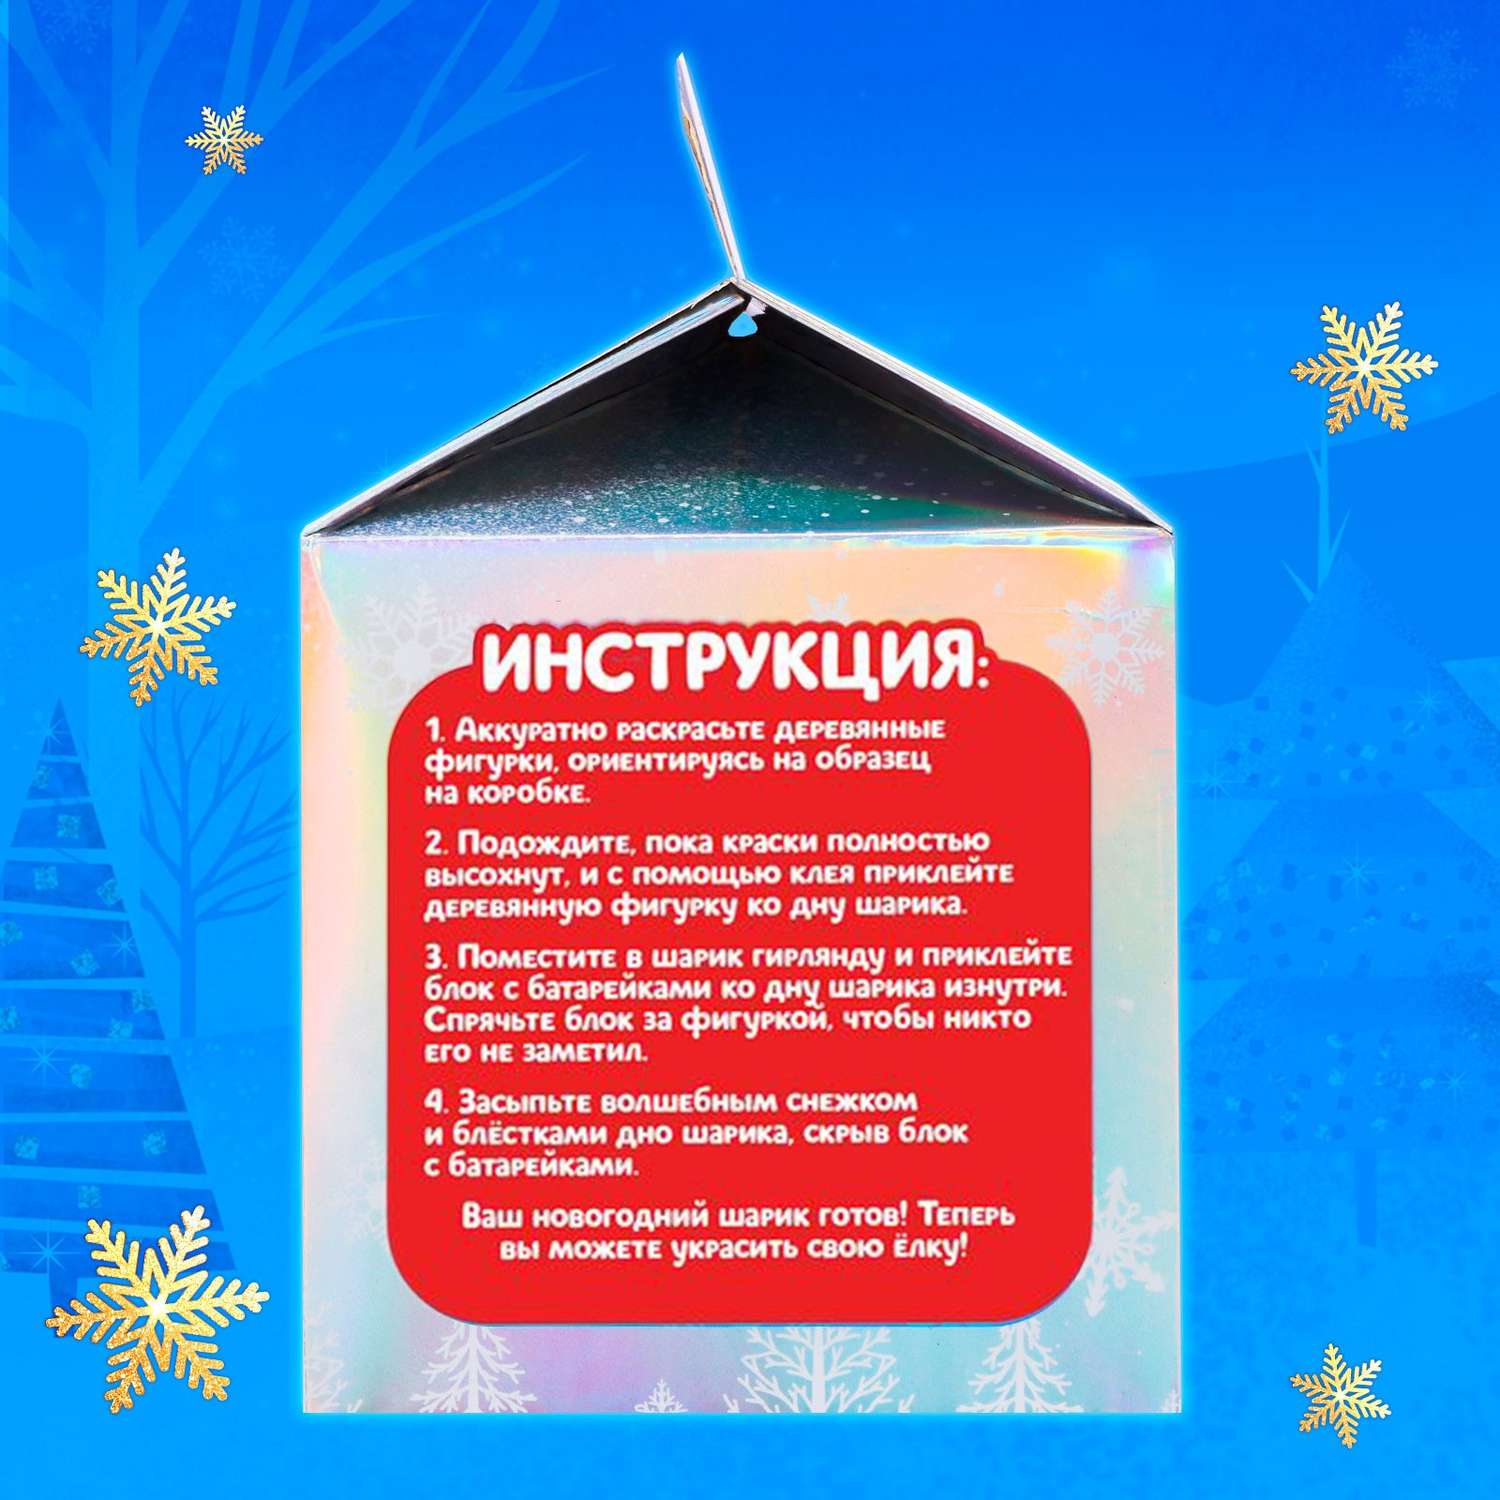 Набор Эврики для опытов «Новогодний шарик» Дед Мороз с ёлочкой. диаметр 11 см - фото 5